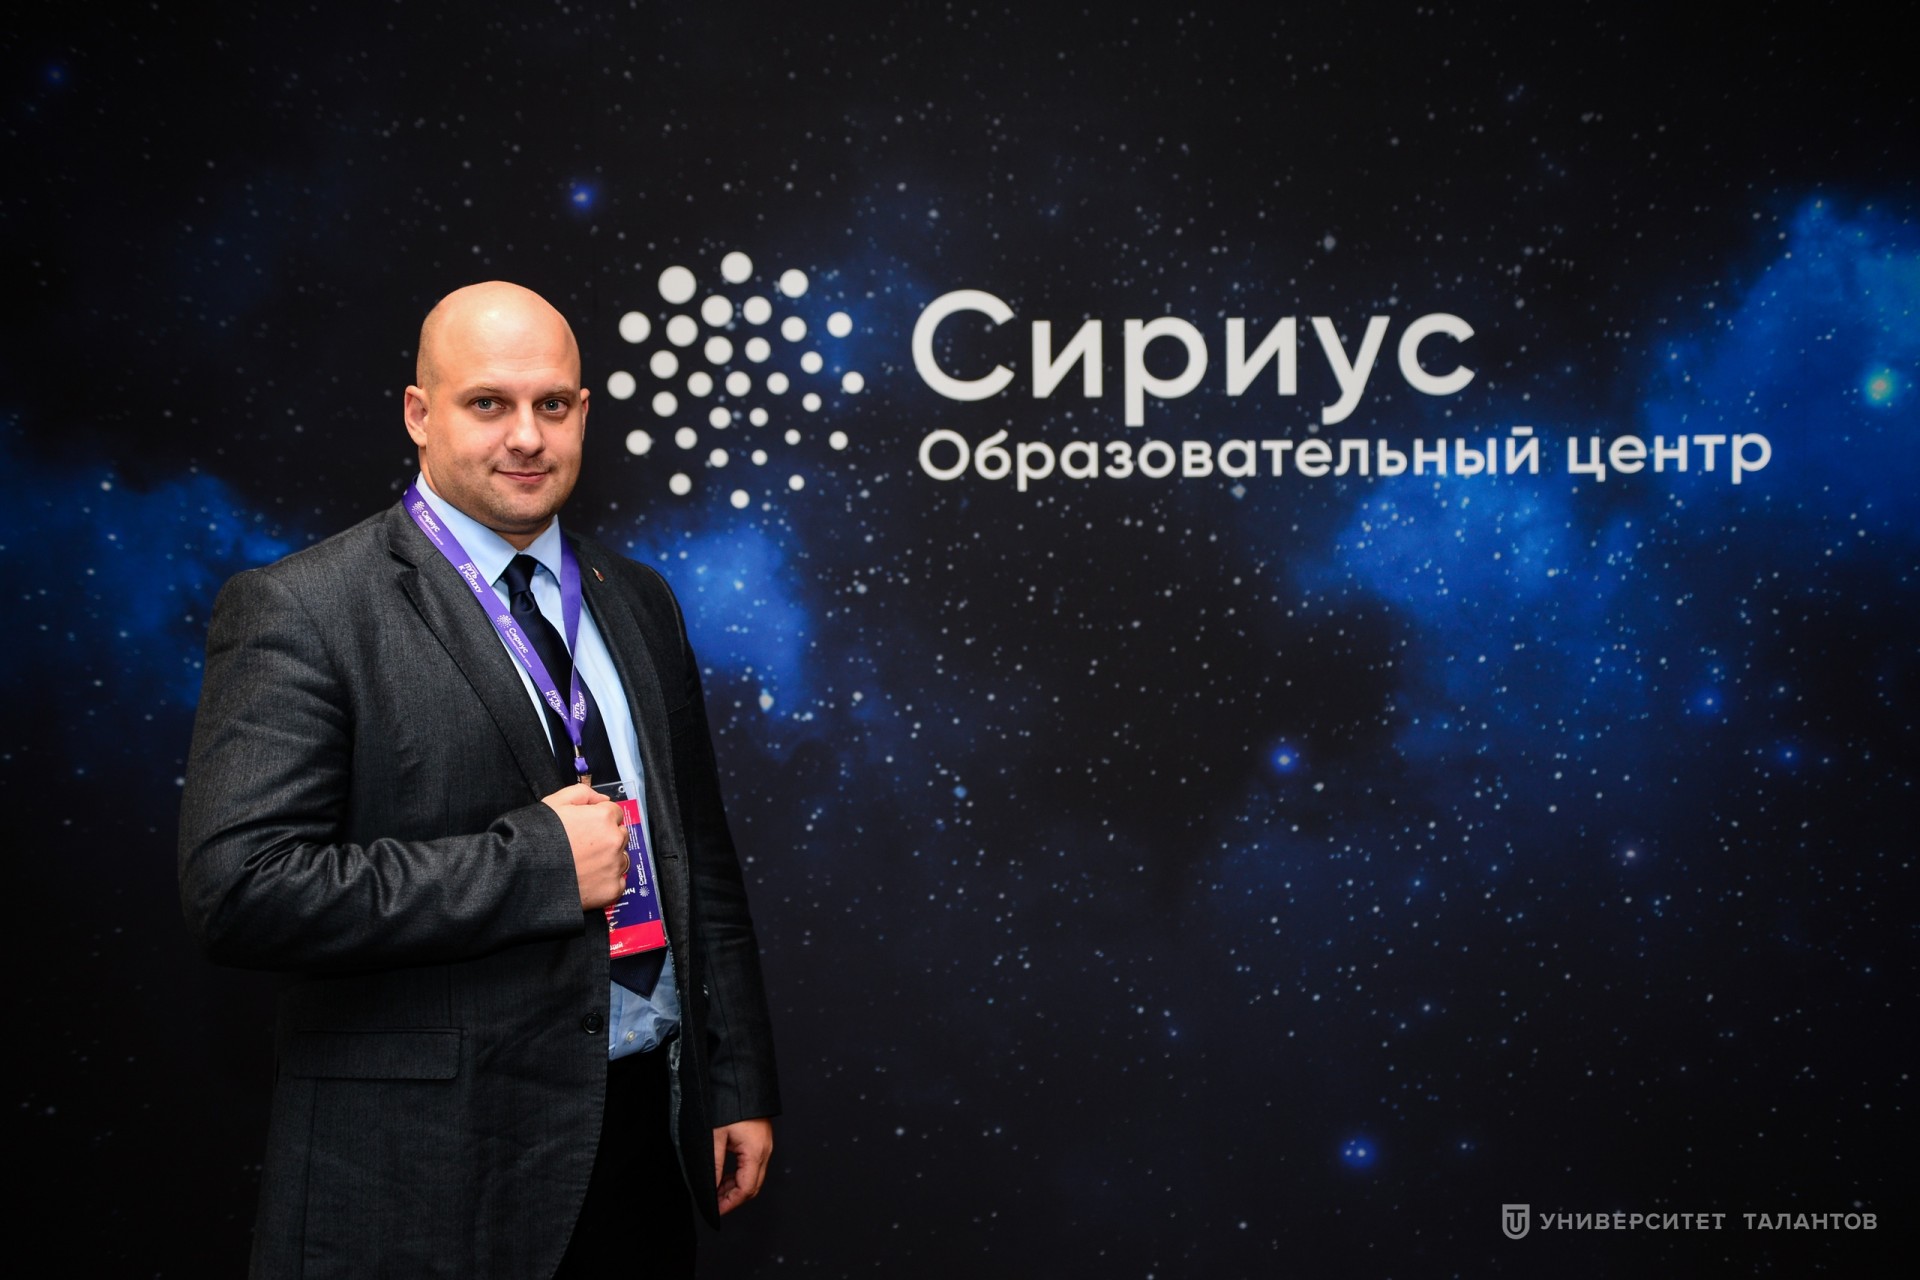 Дмитрий Шишкин: «Главная компетенция молодого специалиста в современном мире – осознанность и способность к самоопределению»